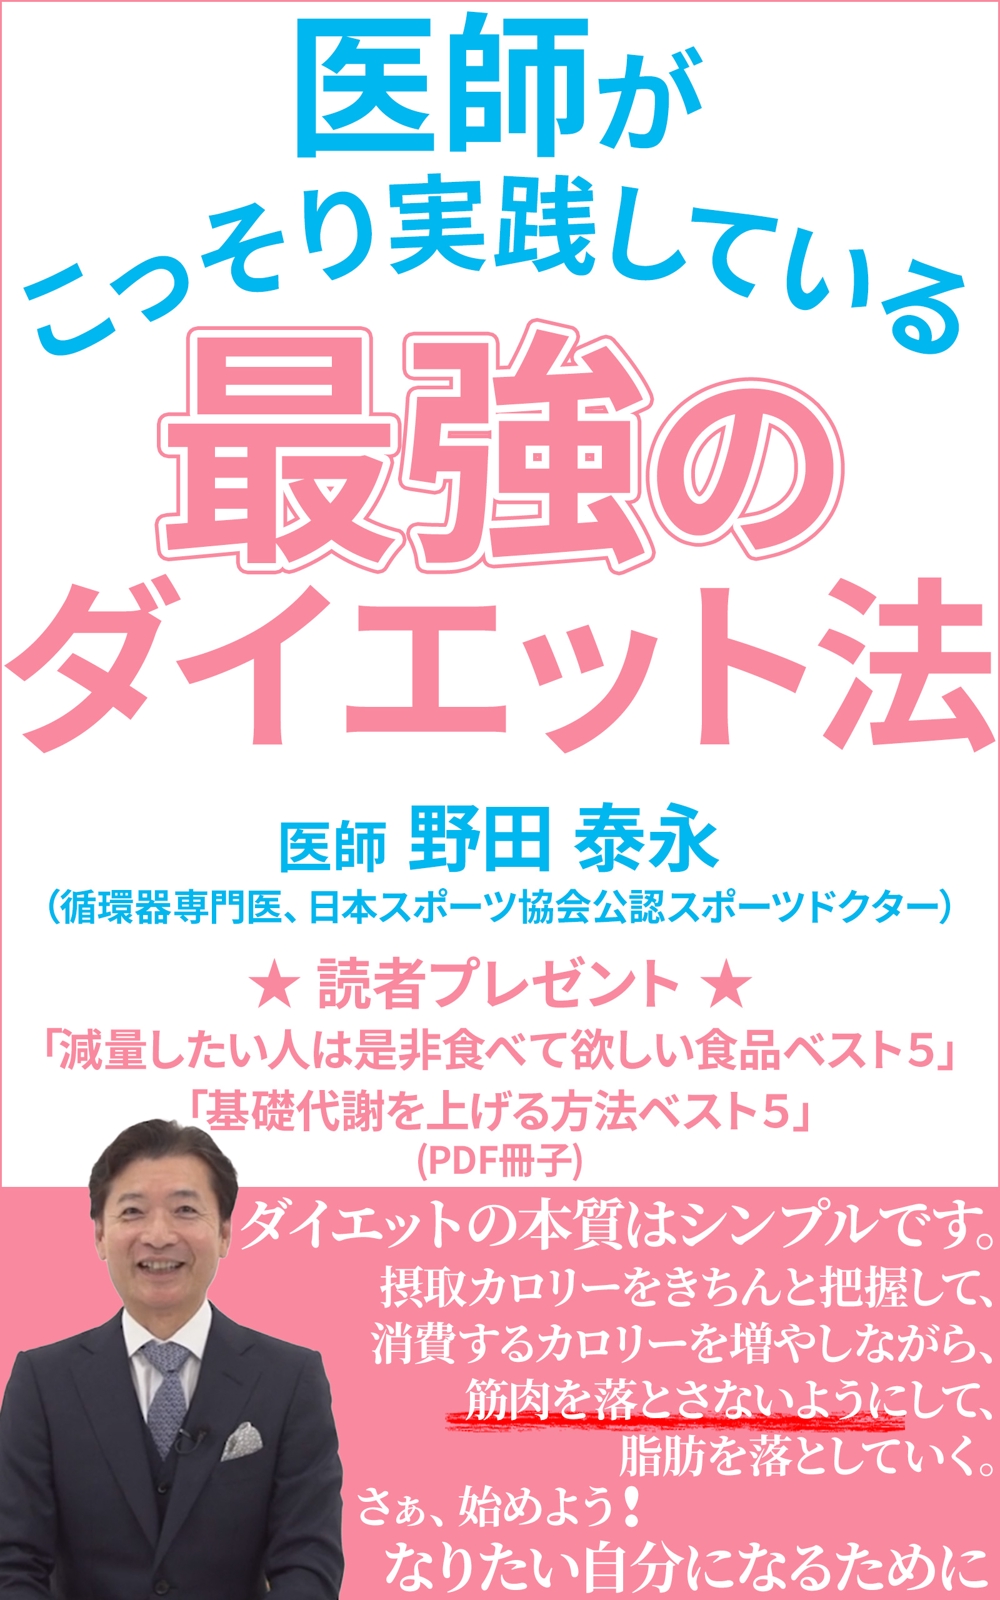 Book-Yasunaga-NODA-A.jpg